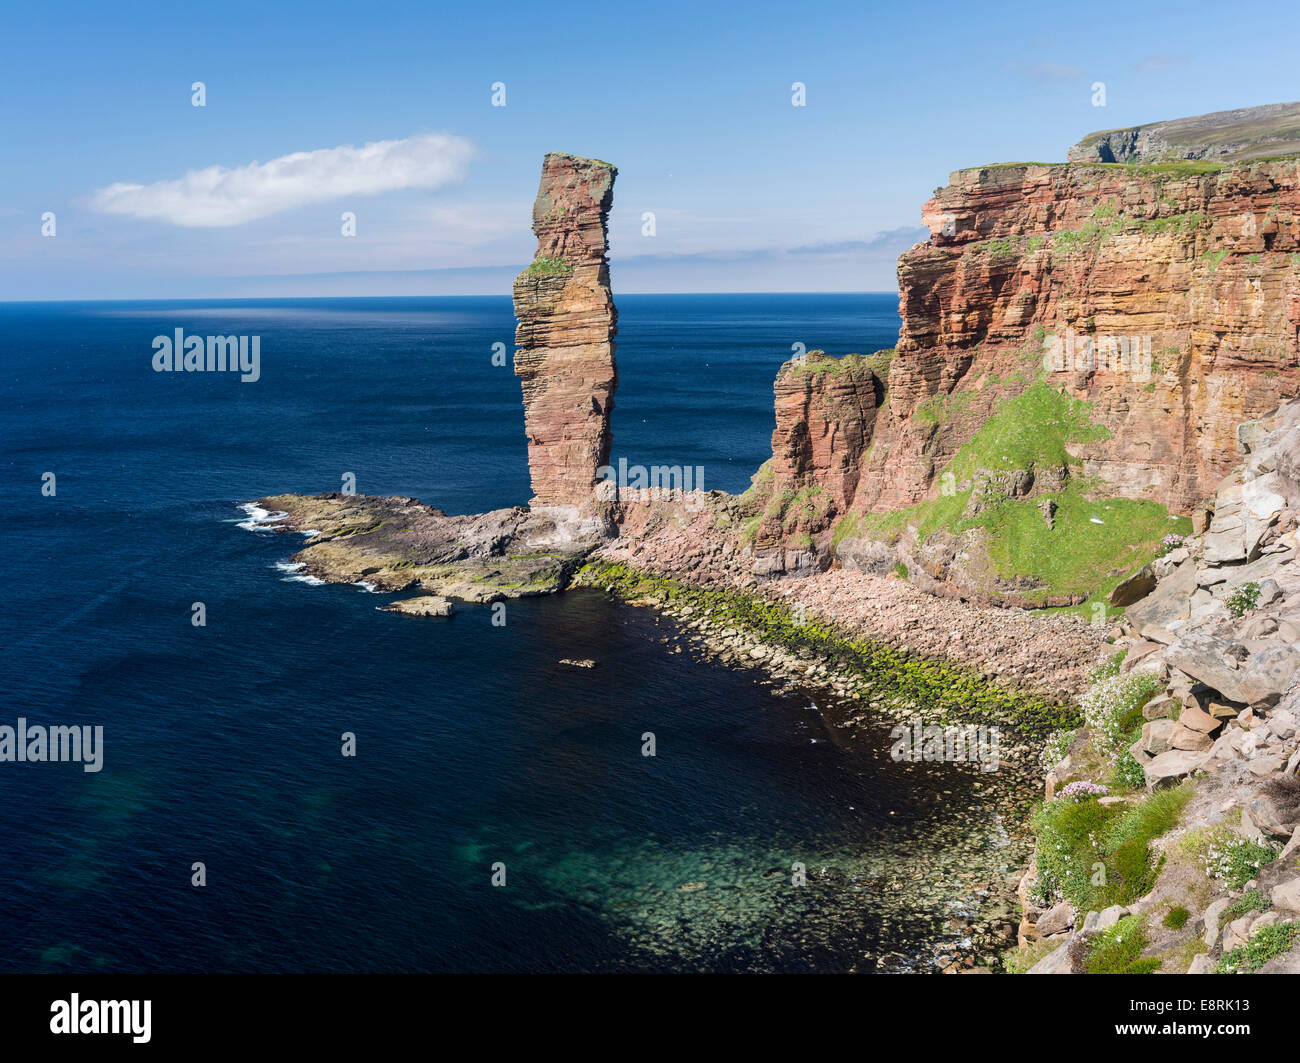 Old Man of Hoy, eines der Symbole der Orkney-Inseln, Orkney Inseln, Schottland. (Großformatige Größen erhältlich) Stockfoto